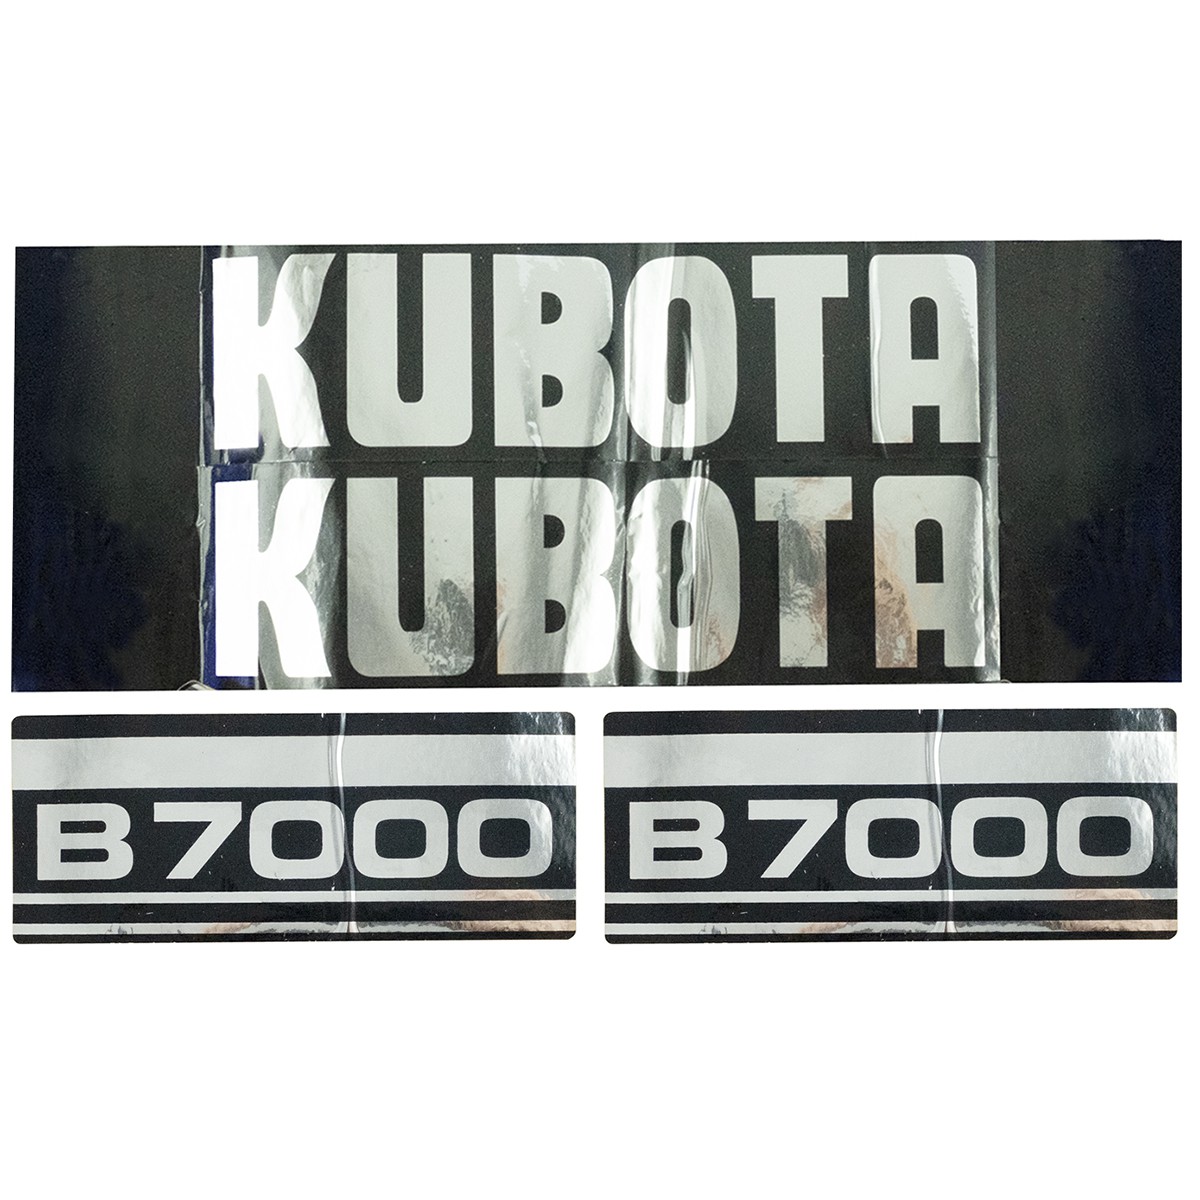 Adhesivos Kubota B7000